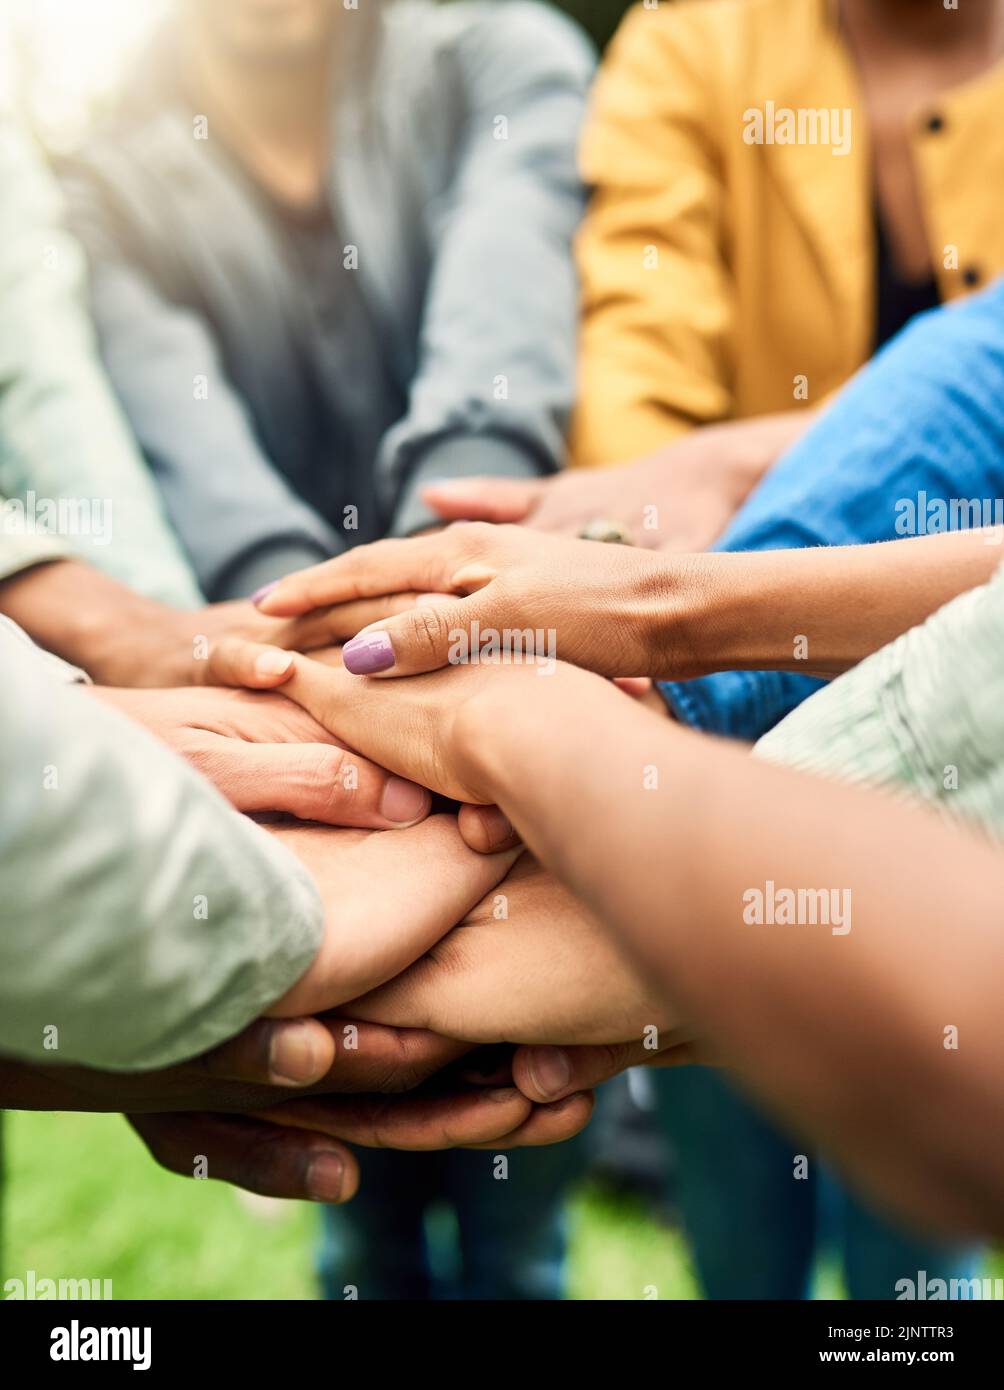 Echte Freunde stehen zusammen. Eine Gruppe von Menschen verbindet ihre Hände zusammen. Stockfoto